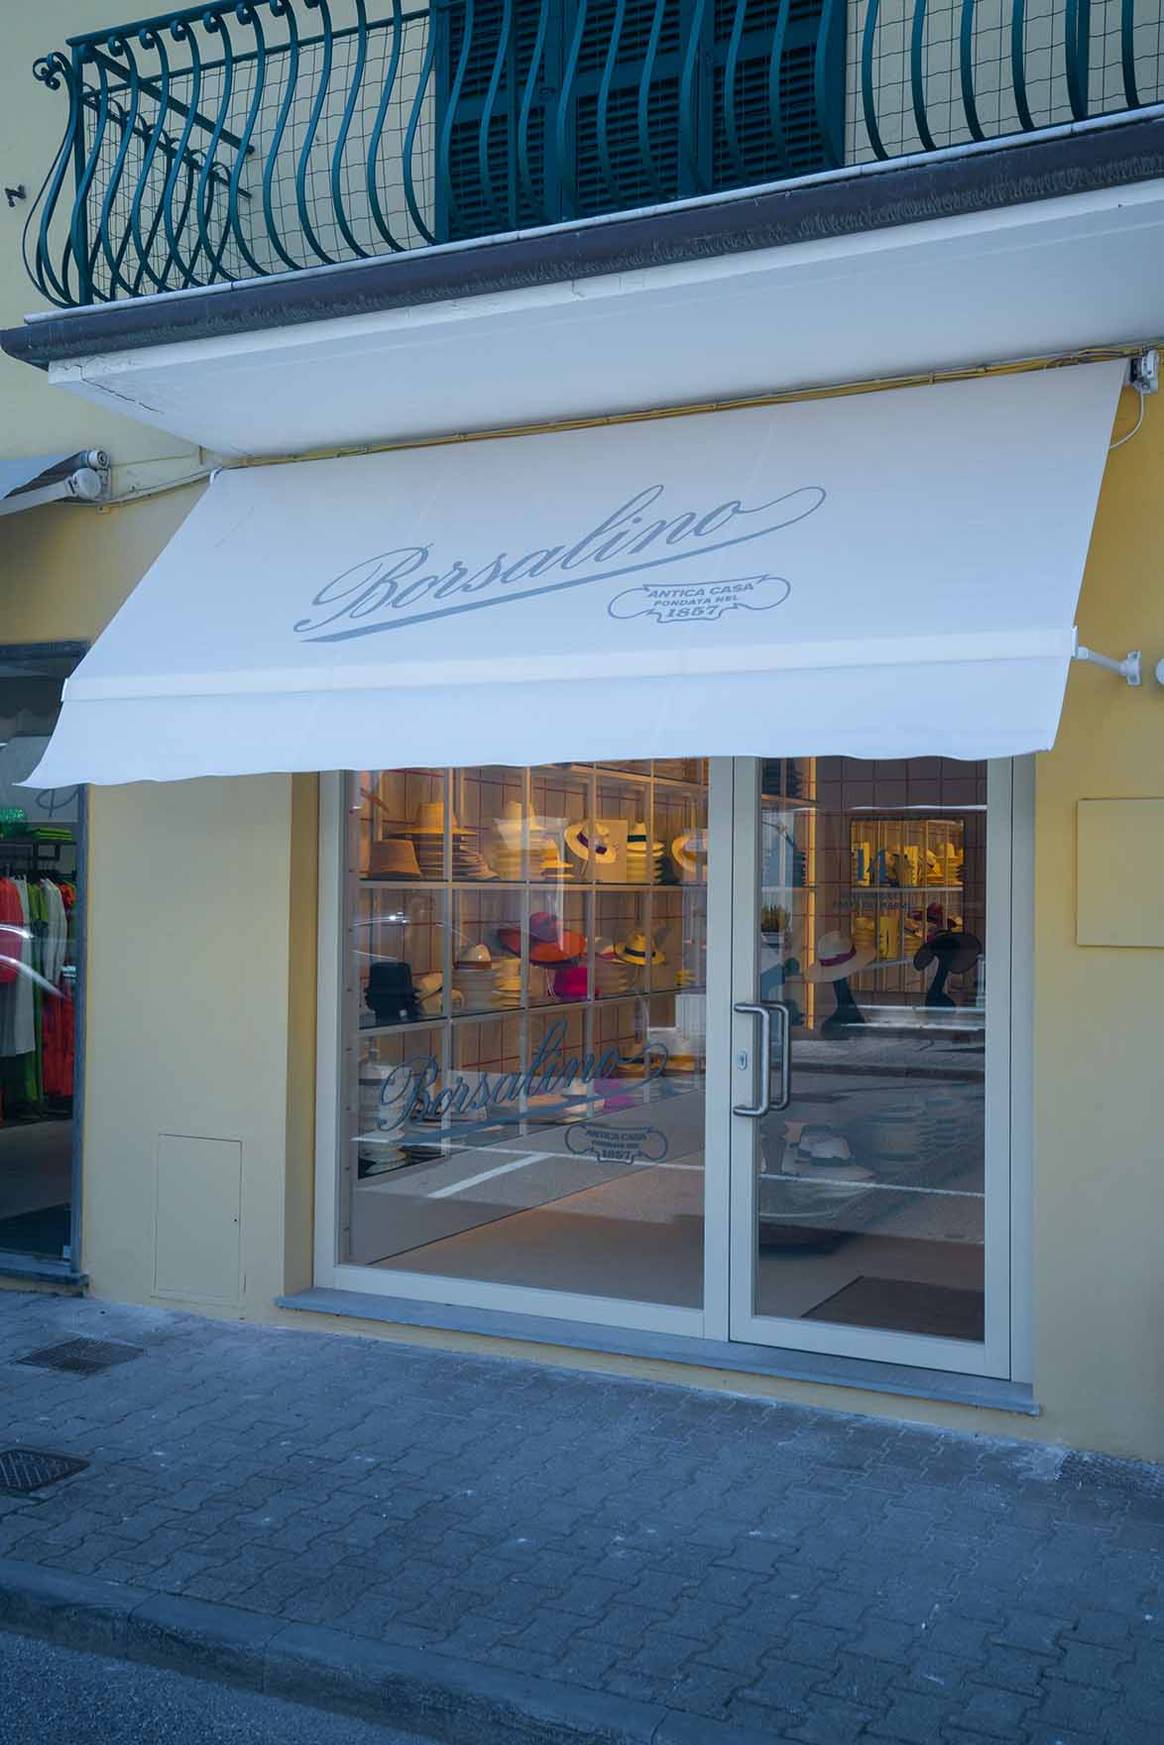 Borsalino, la boutique di Forte dei Marmi, courtesy of Borsalino